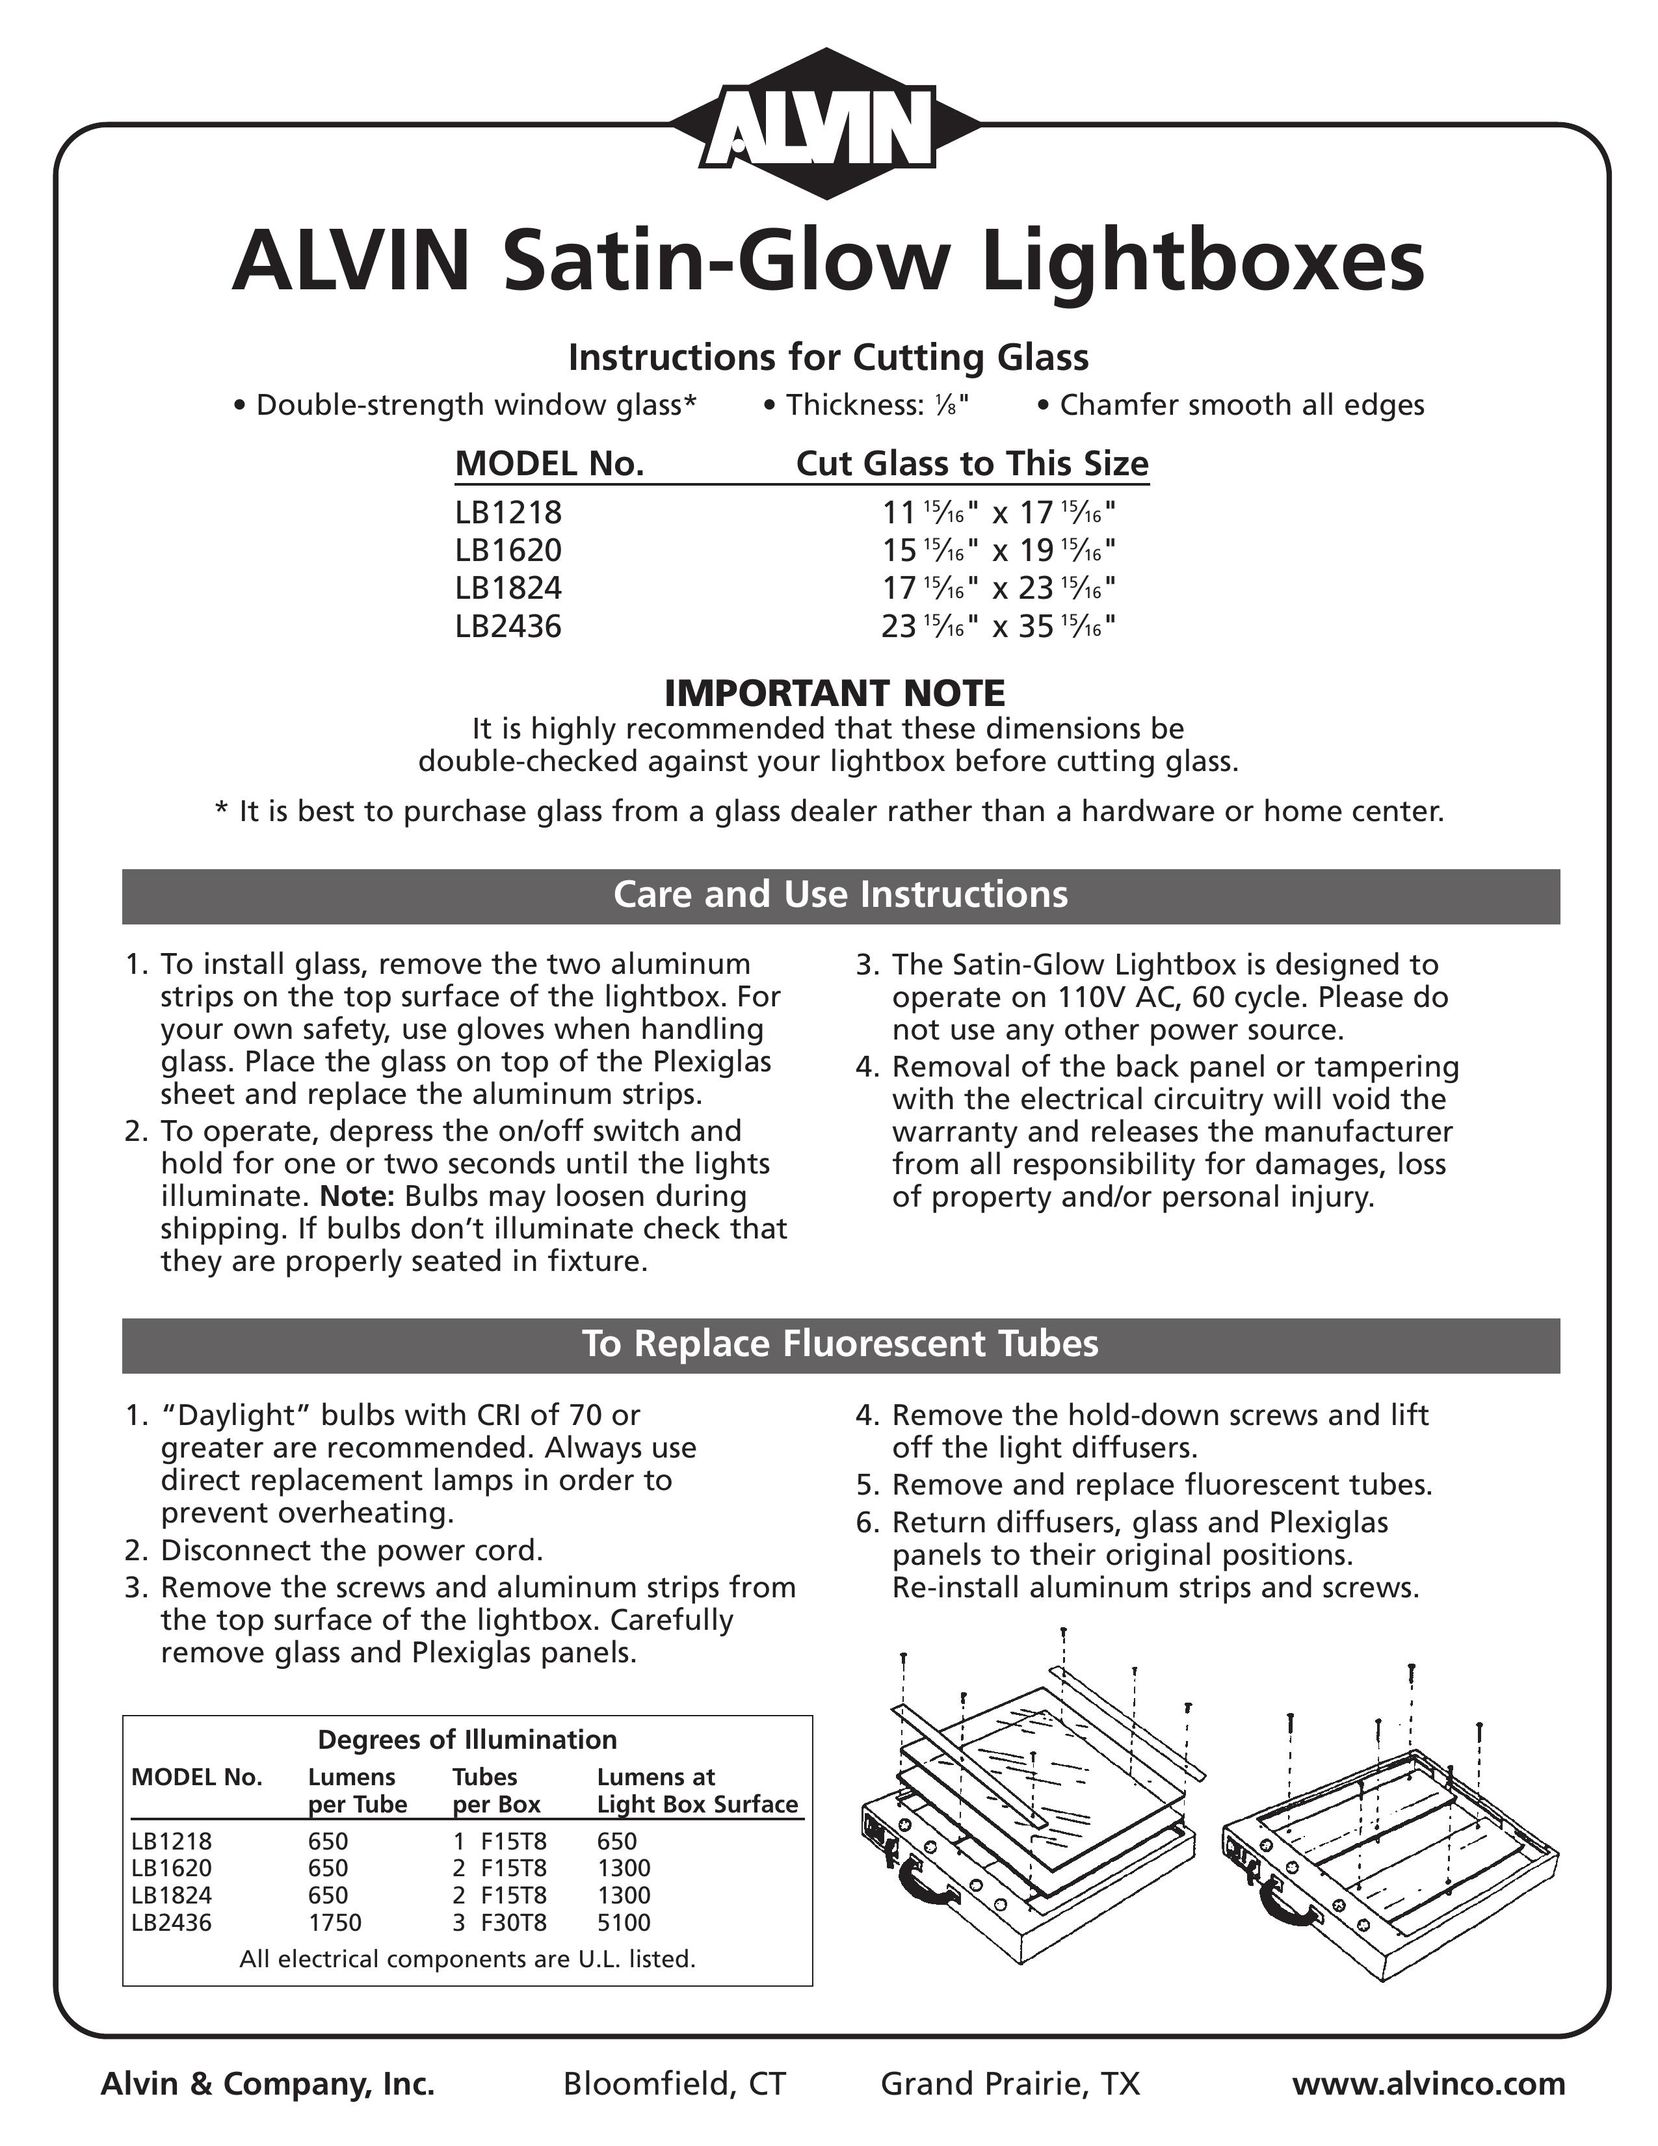 Alvin LB2436 Indoor Furnishings User Manual